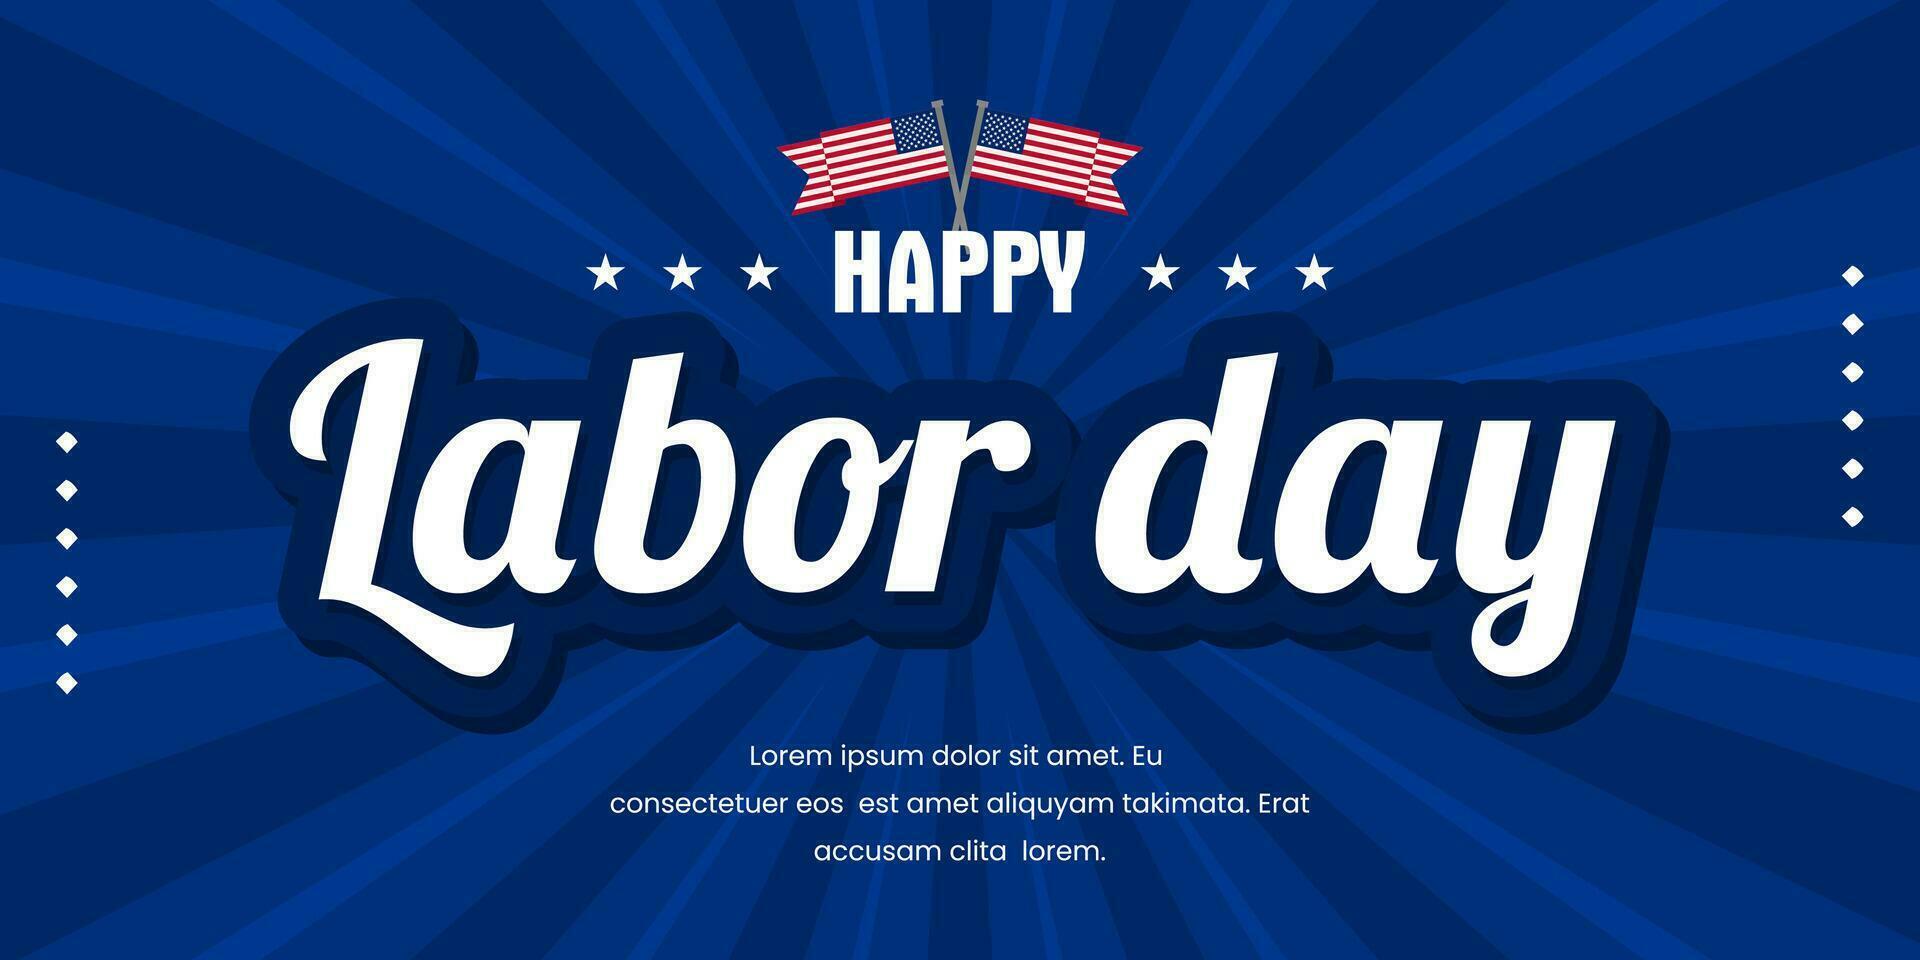 oss arbetskraft dag baner blå geometrisk bakgrund. amerikan flagga och text Lycklig arbetskraft dag. vektor illustration.